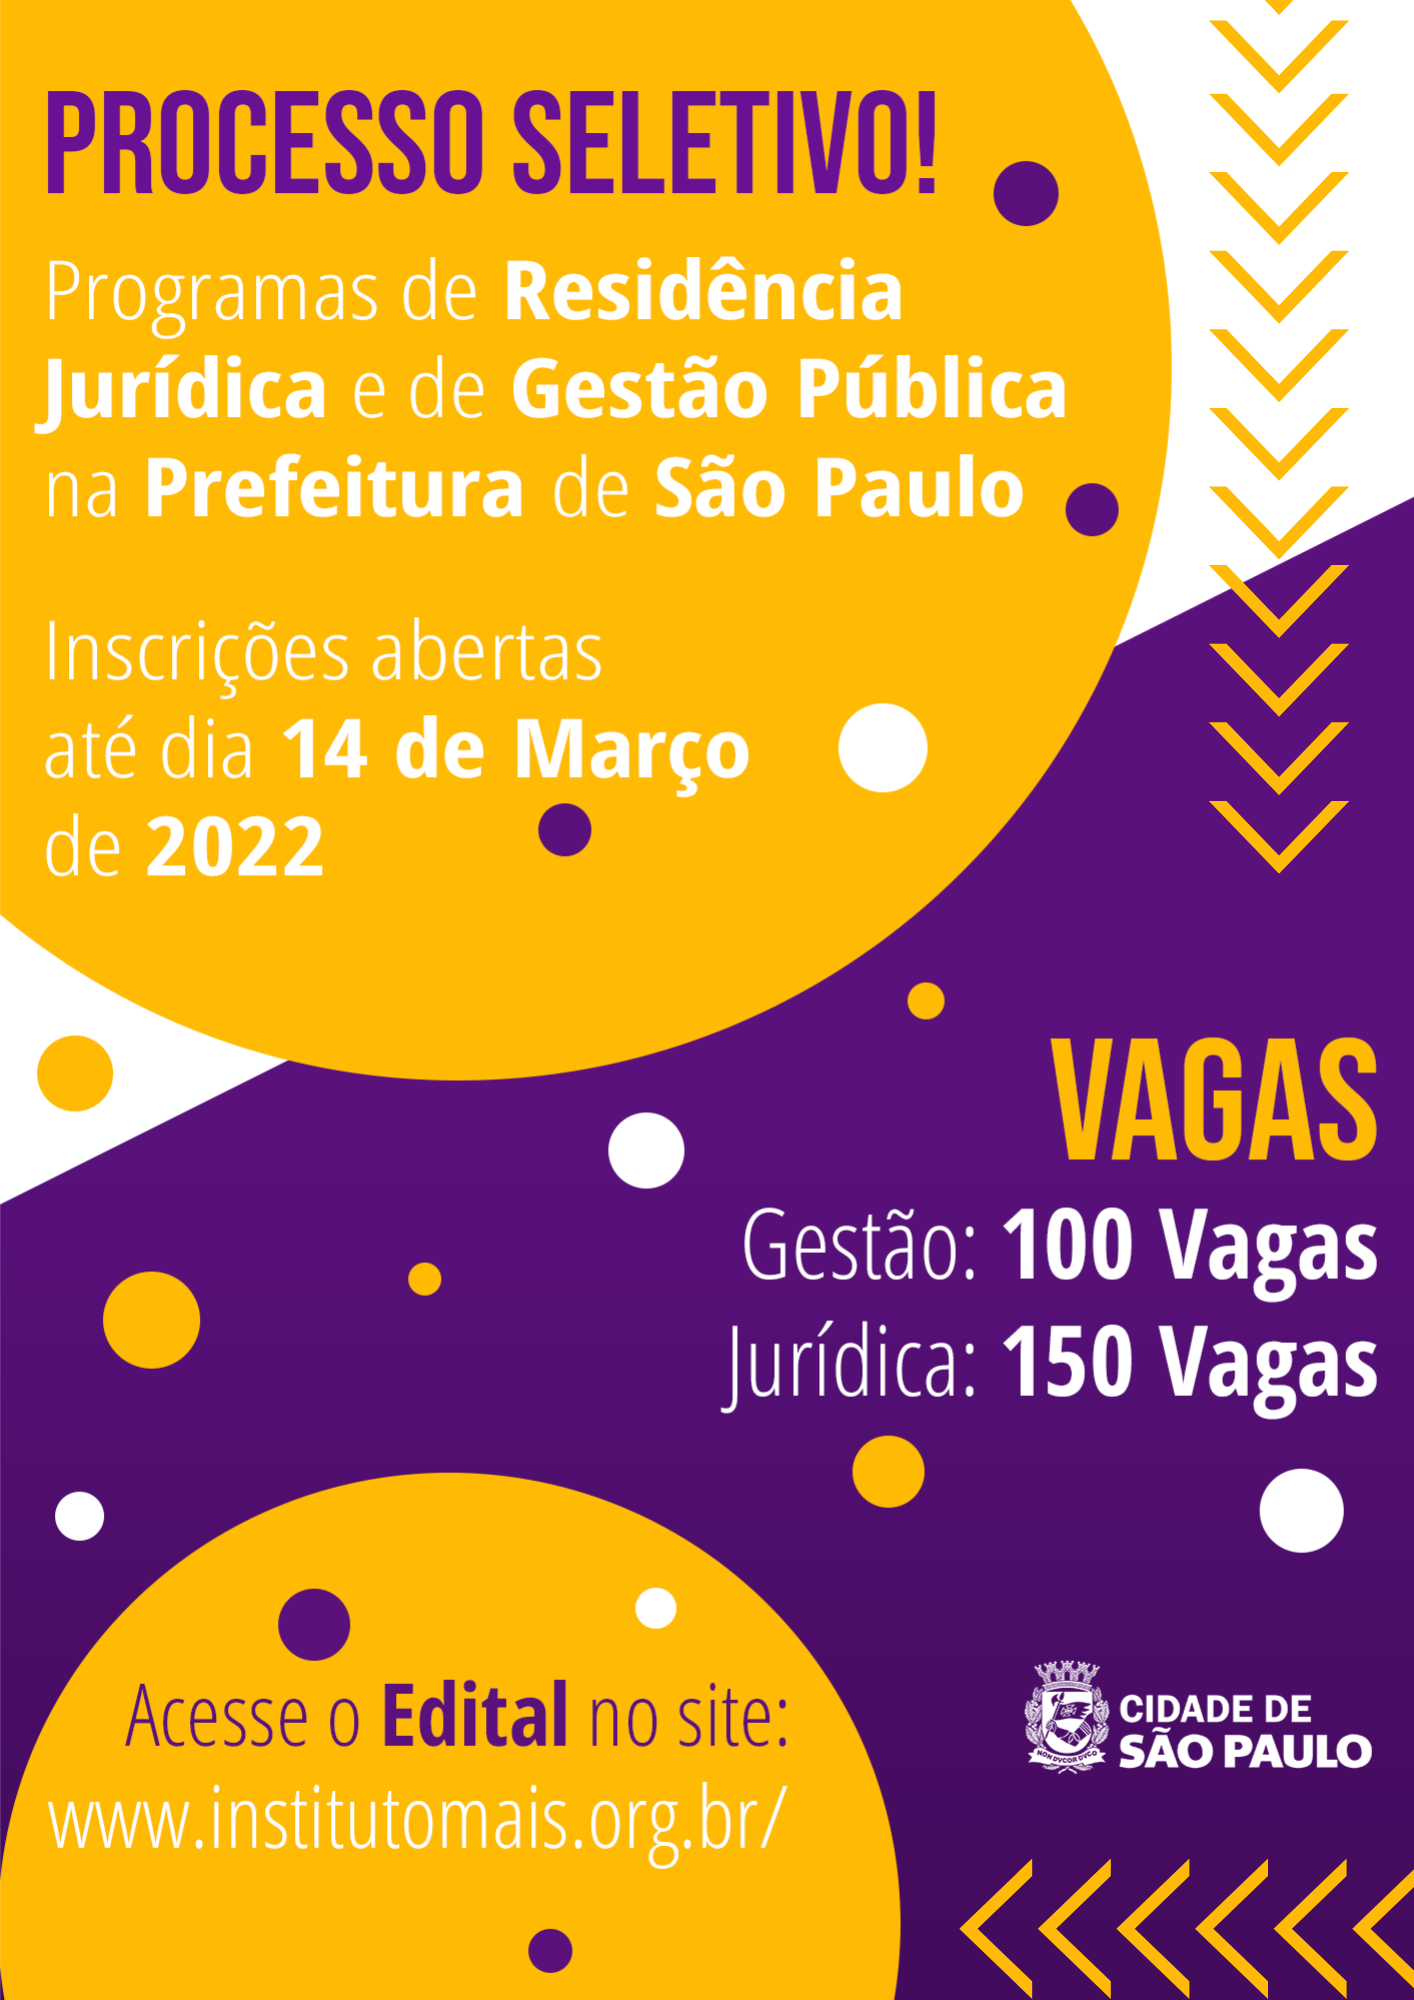 Arte com fundo colorido e em destaque letras brancas com a mensagem "Processo Seletivo! Programas de Residência Jurídica e de Gestão Pública na Prefeitura de São Paulo; Inscrições até 14 de Março de 2022."